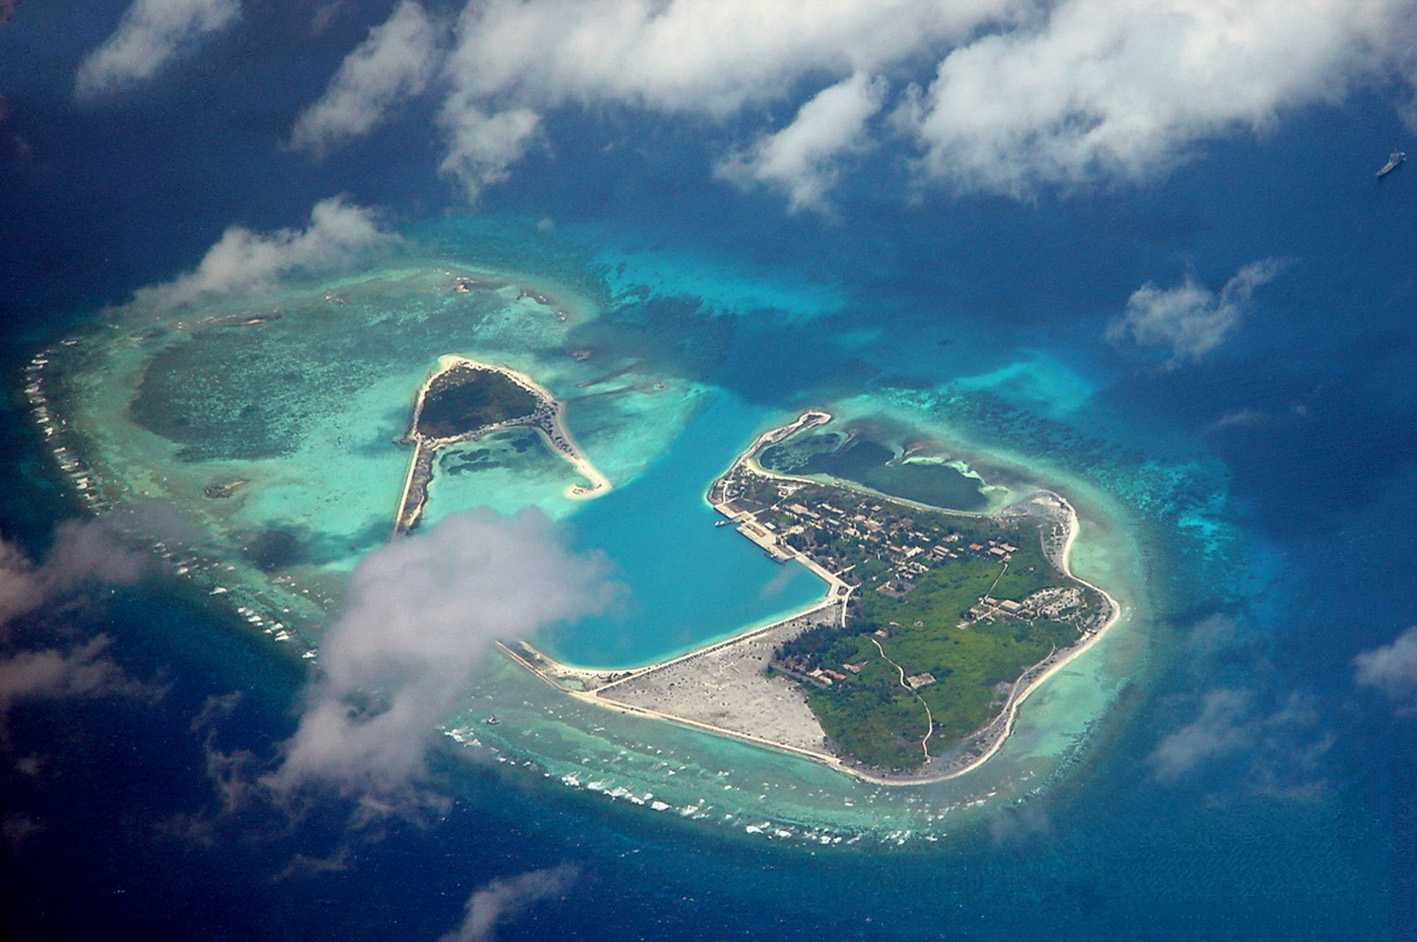 南沙群岛最大的岛图片